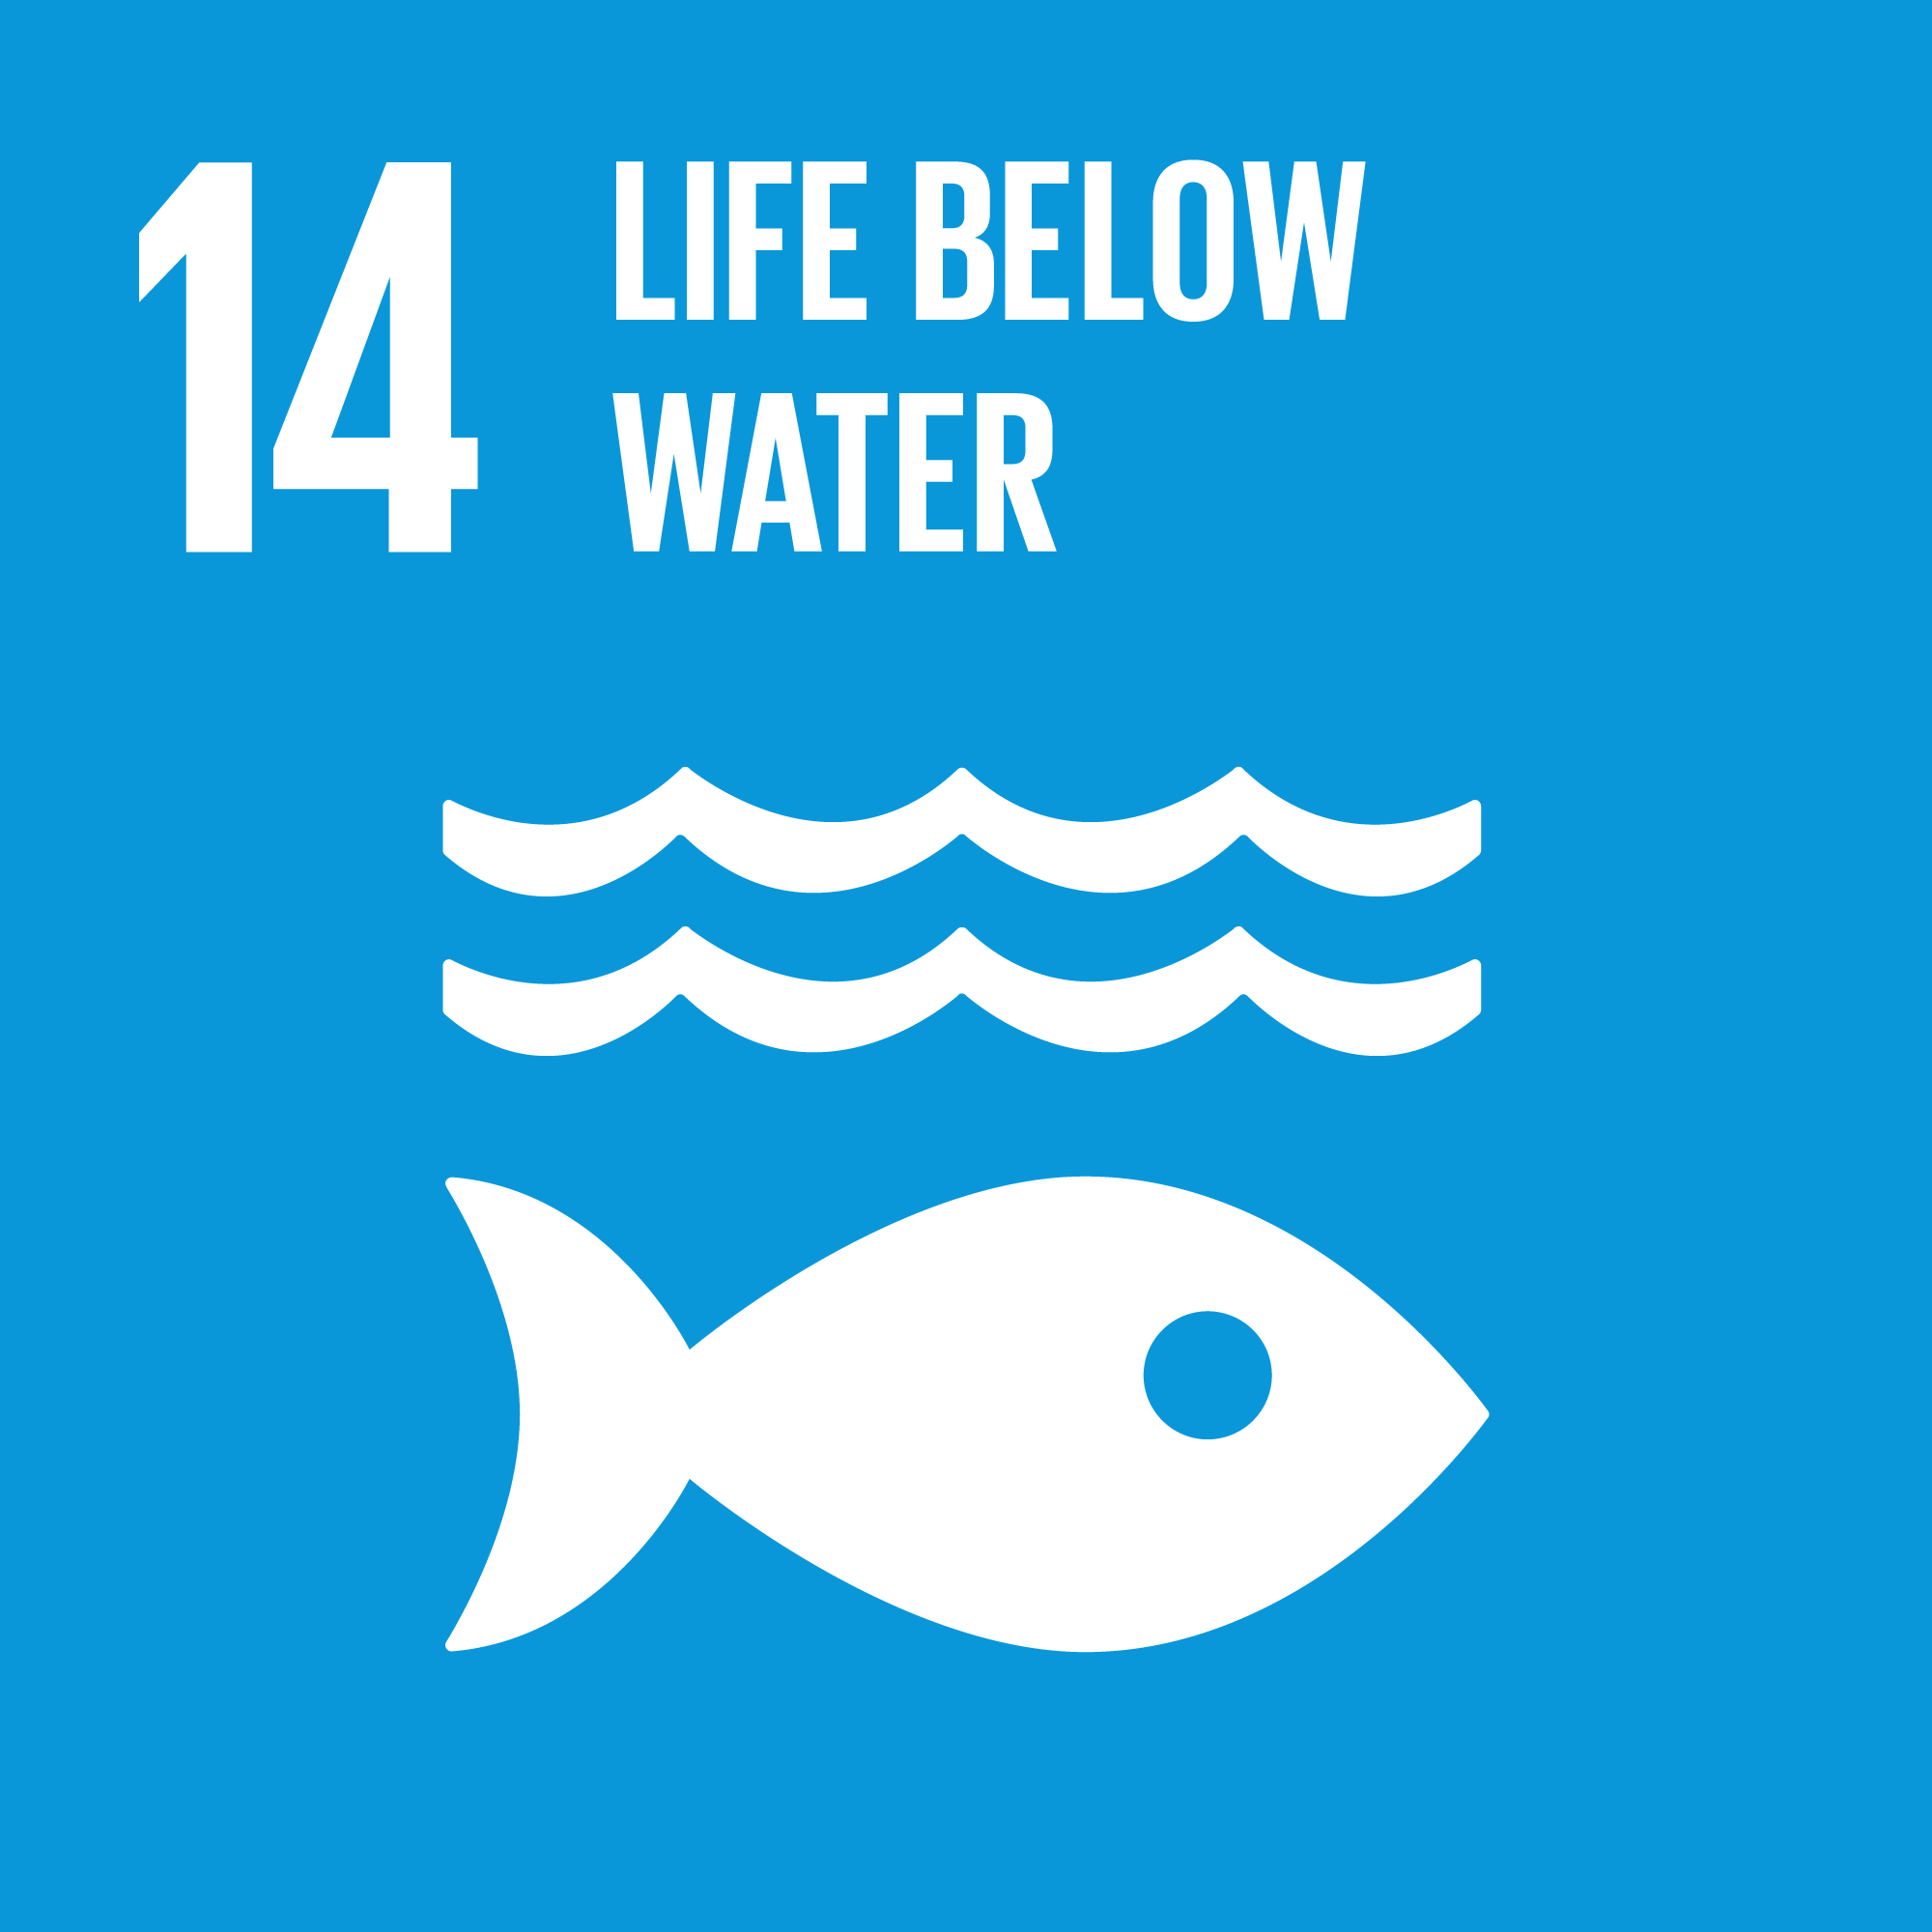 Global Goal 14 Life below water